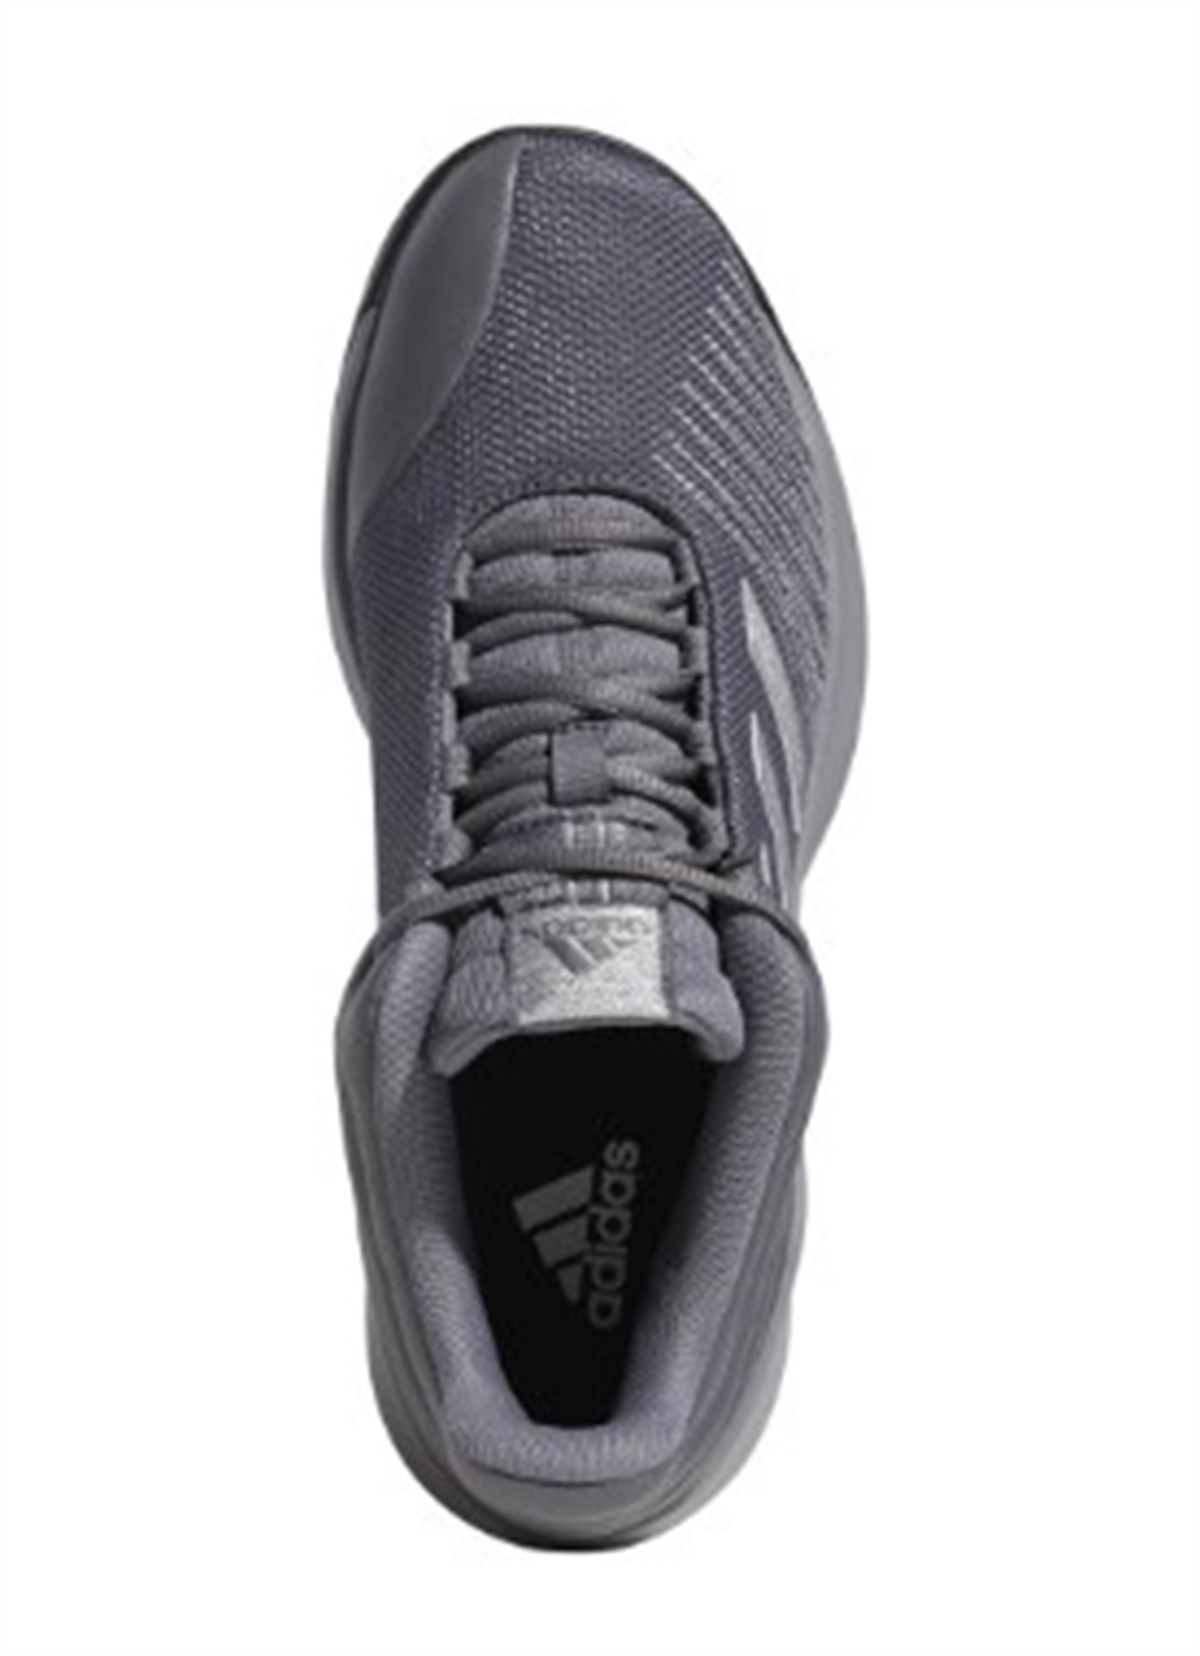 Adidas Pro Spark 2018 Low Erkek Spor Ayakkabısı F99901-X